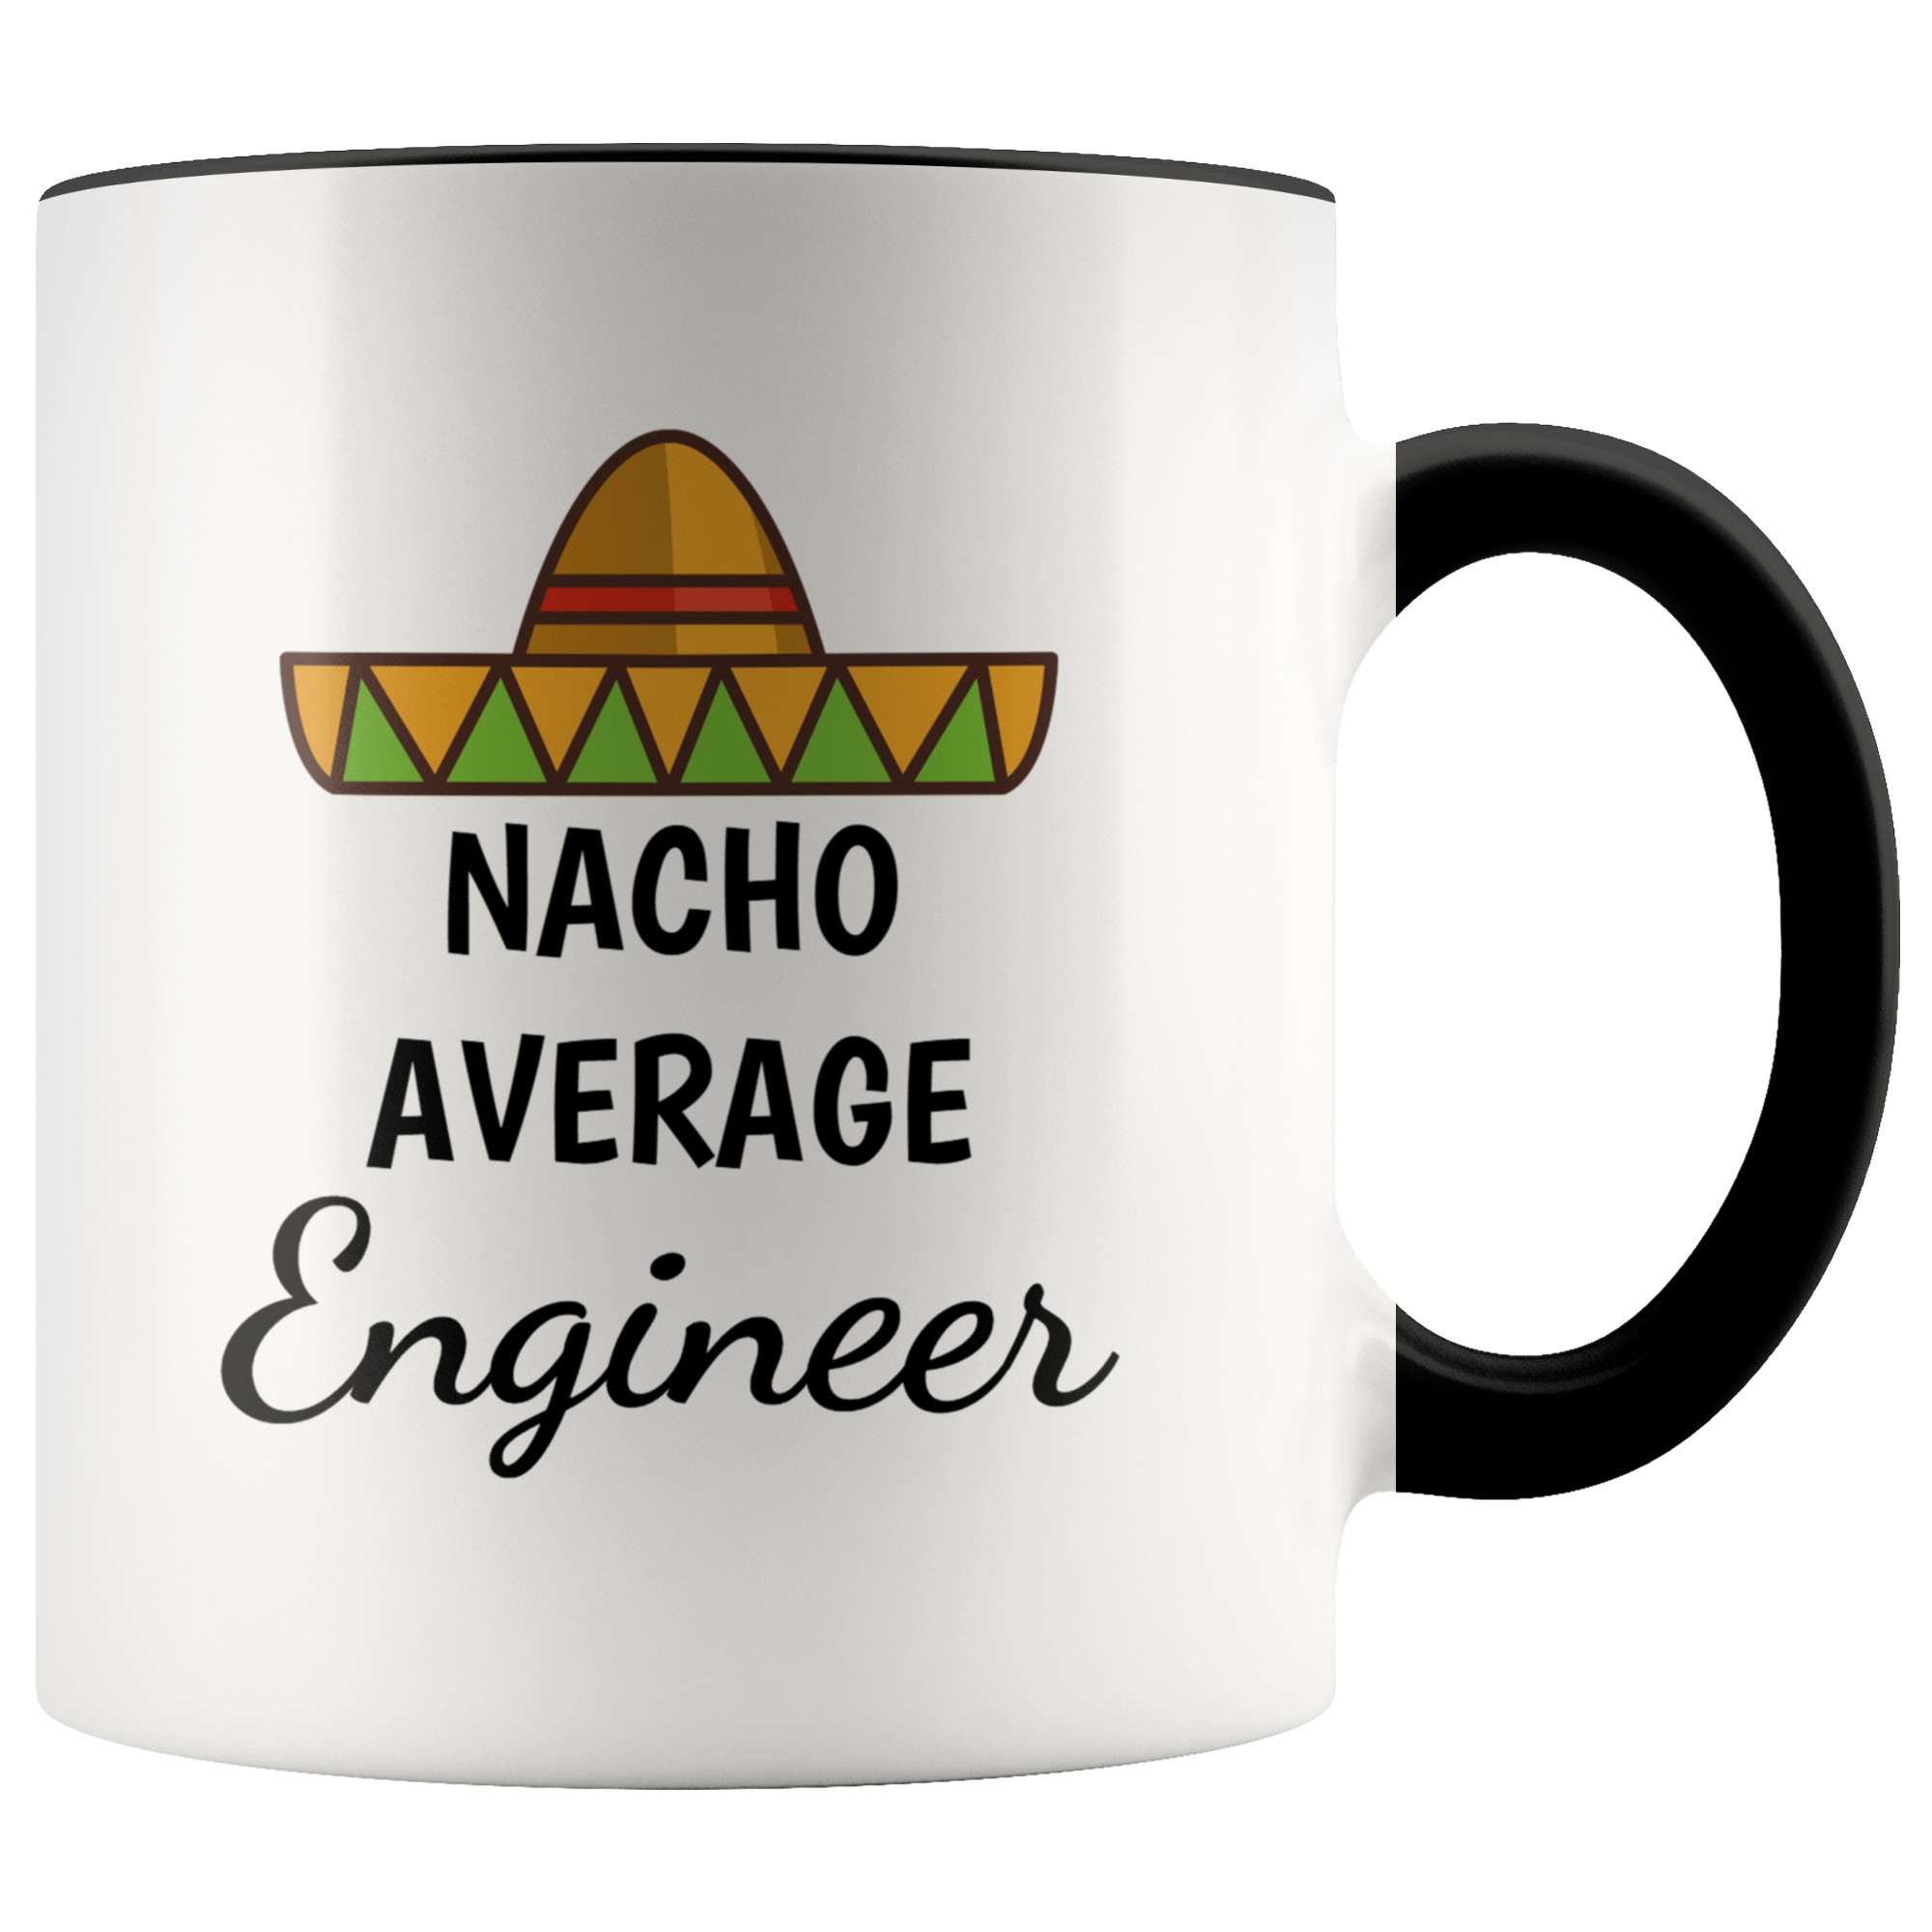 Nacho Average Engineer Mug